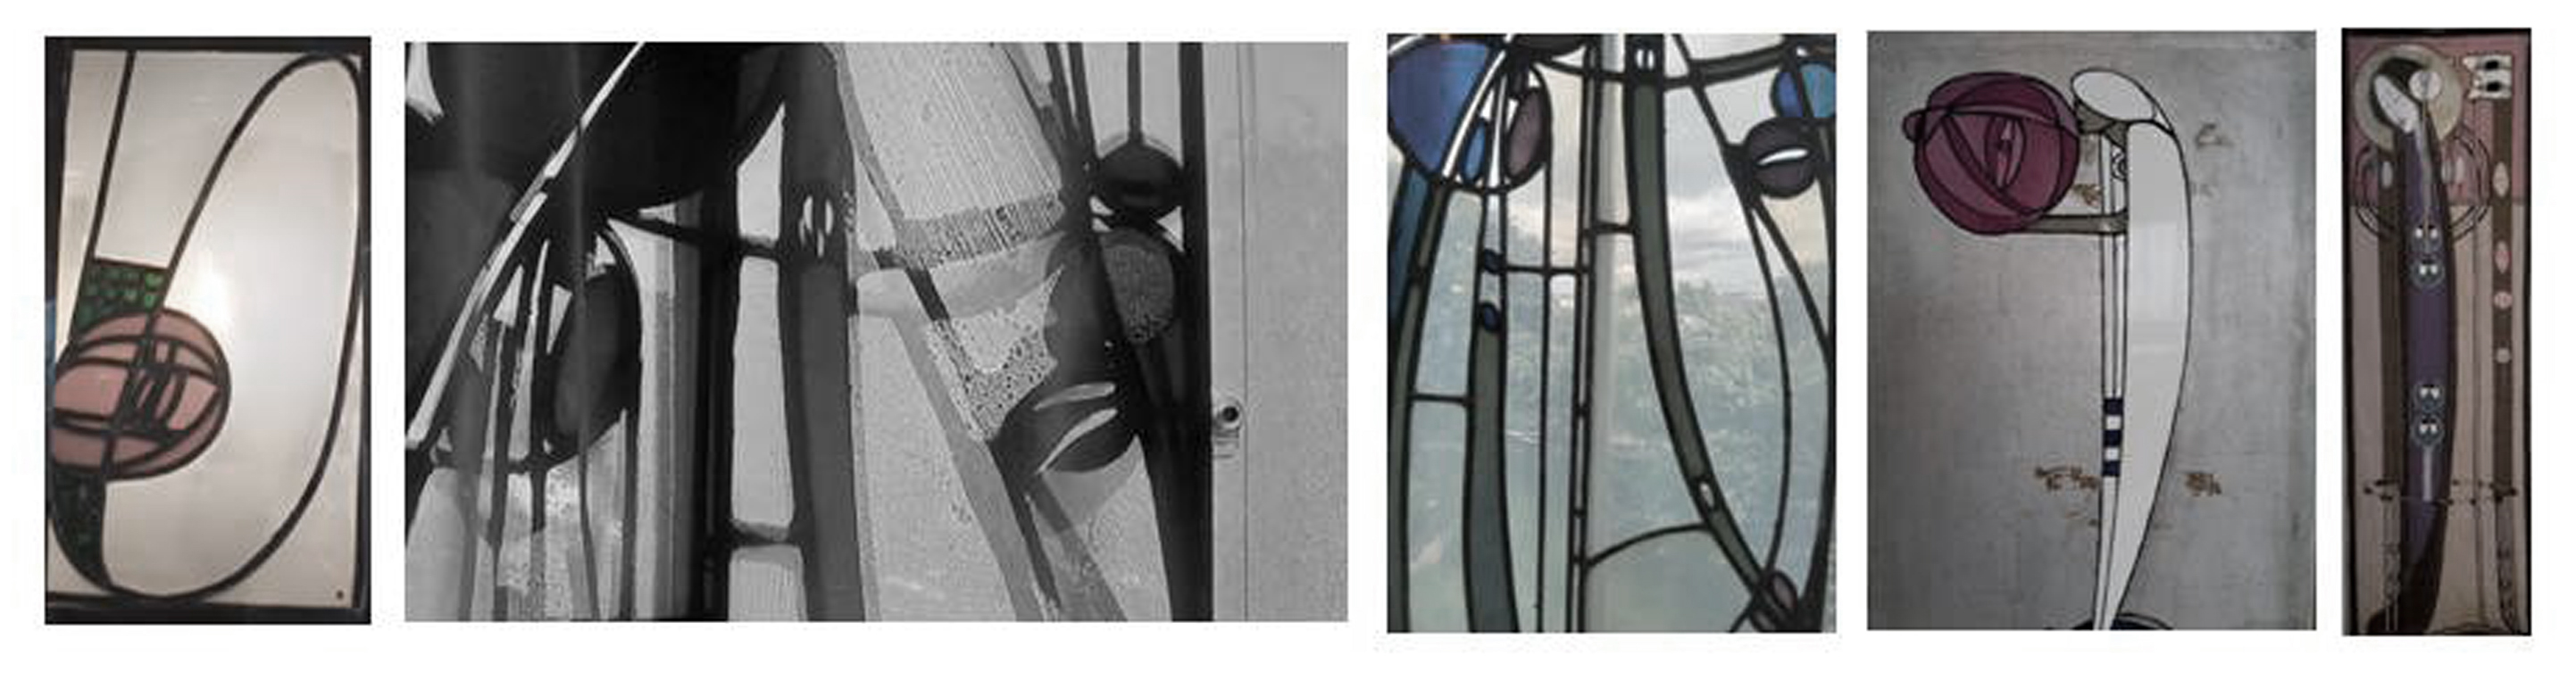 Vistas parciales y de detalle de vitrales de vanos y lámparas de la Hill House en la actualidad. Fuentes: fotos del autor tomadas en agosto de 2023